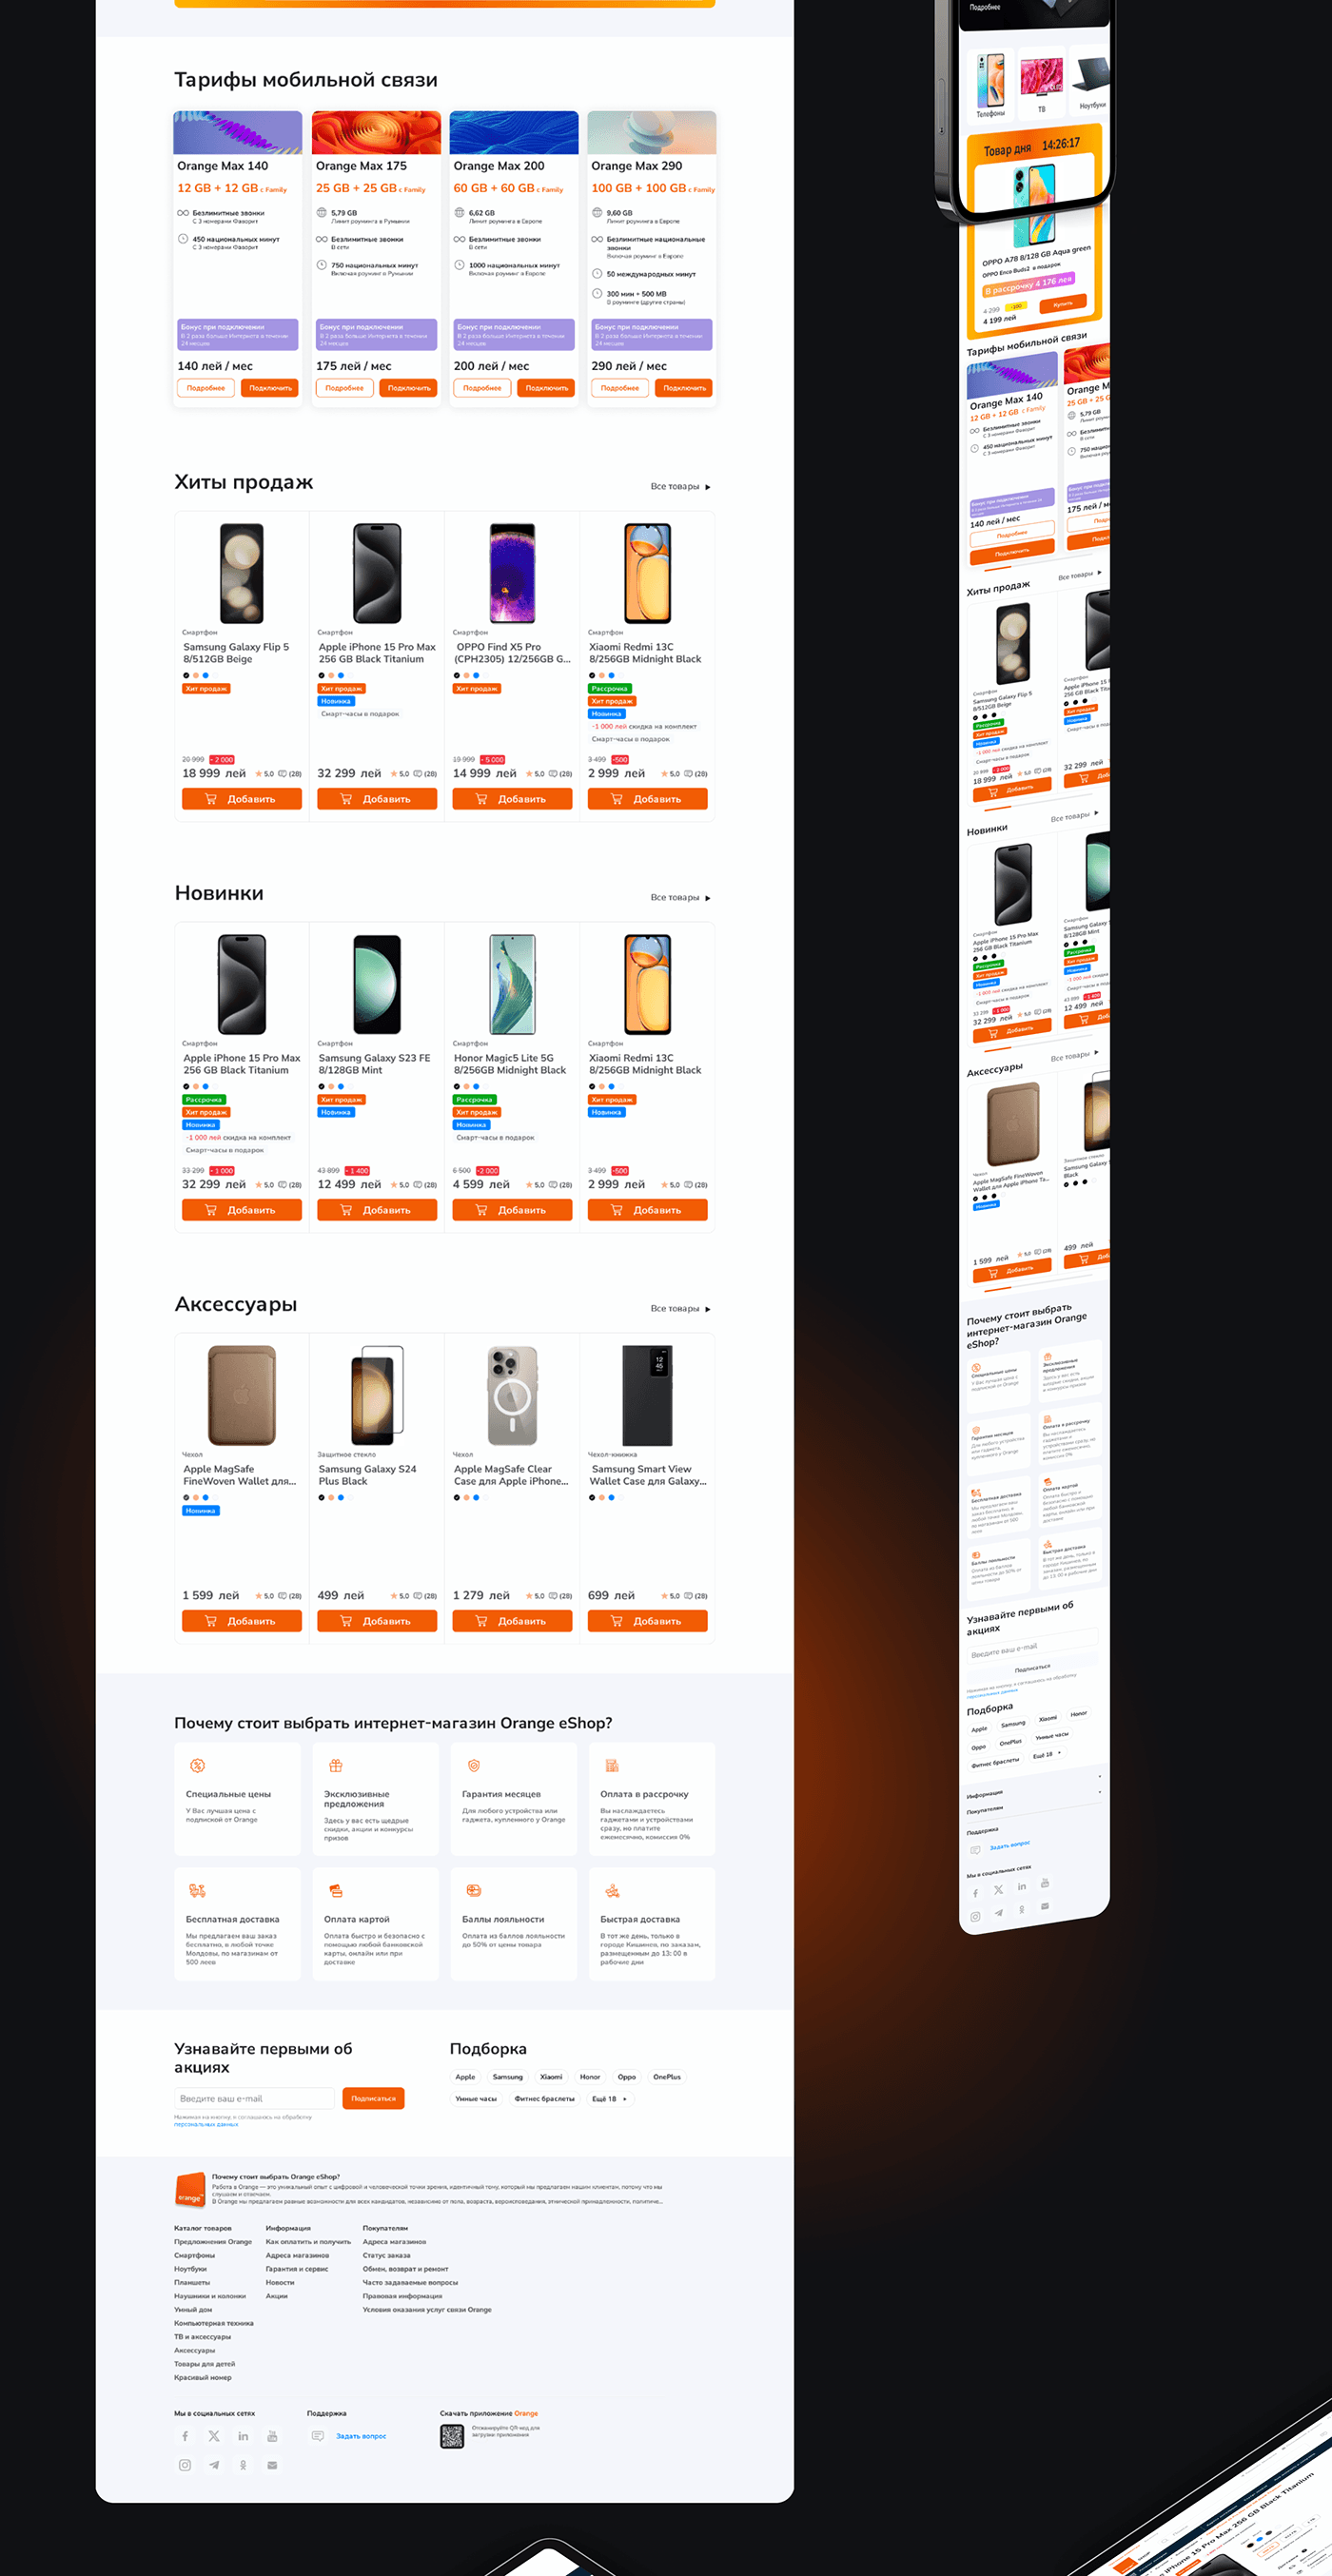 Web Design  Website redesign redesign website Figma UX design UI/UX Operator Telecom sim company